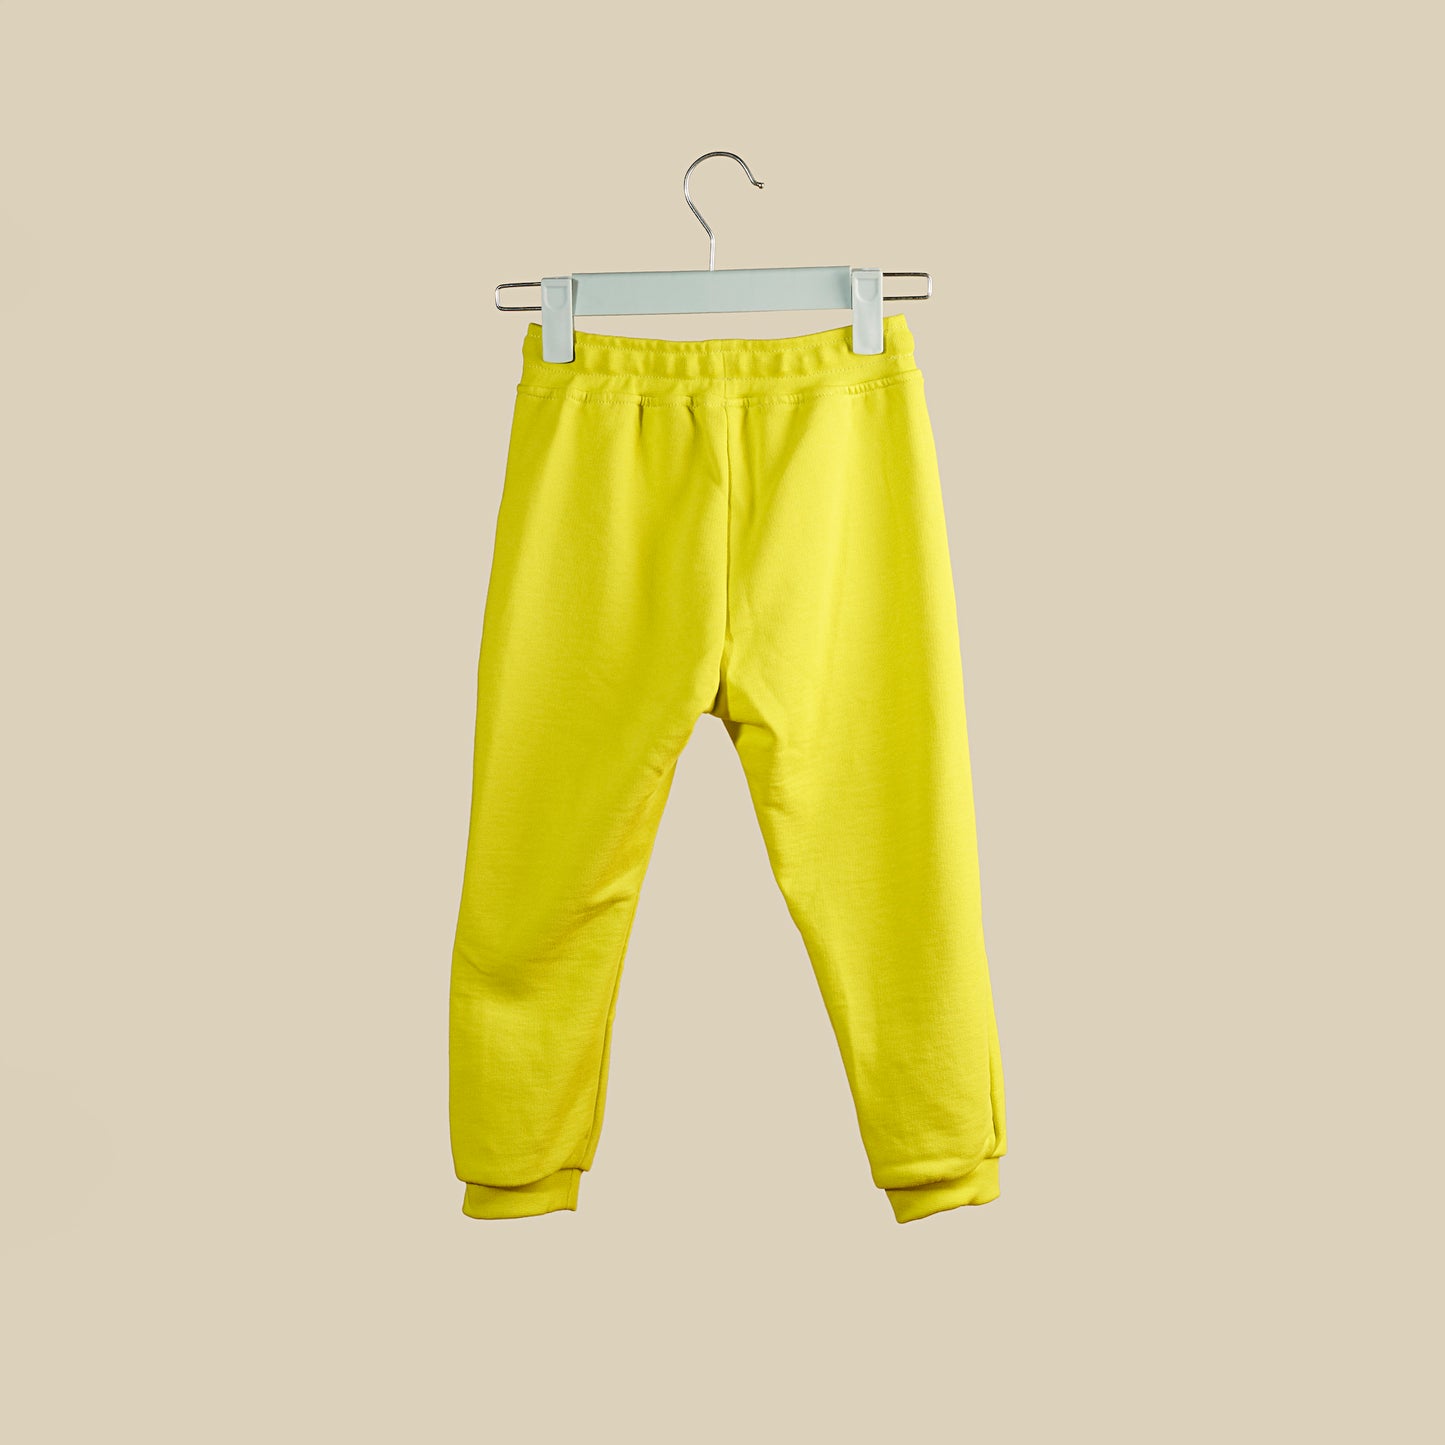 Pantalone jogger in tuta giallo fluo